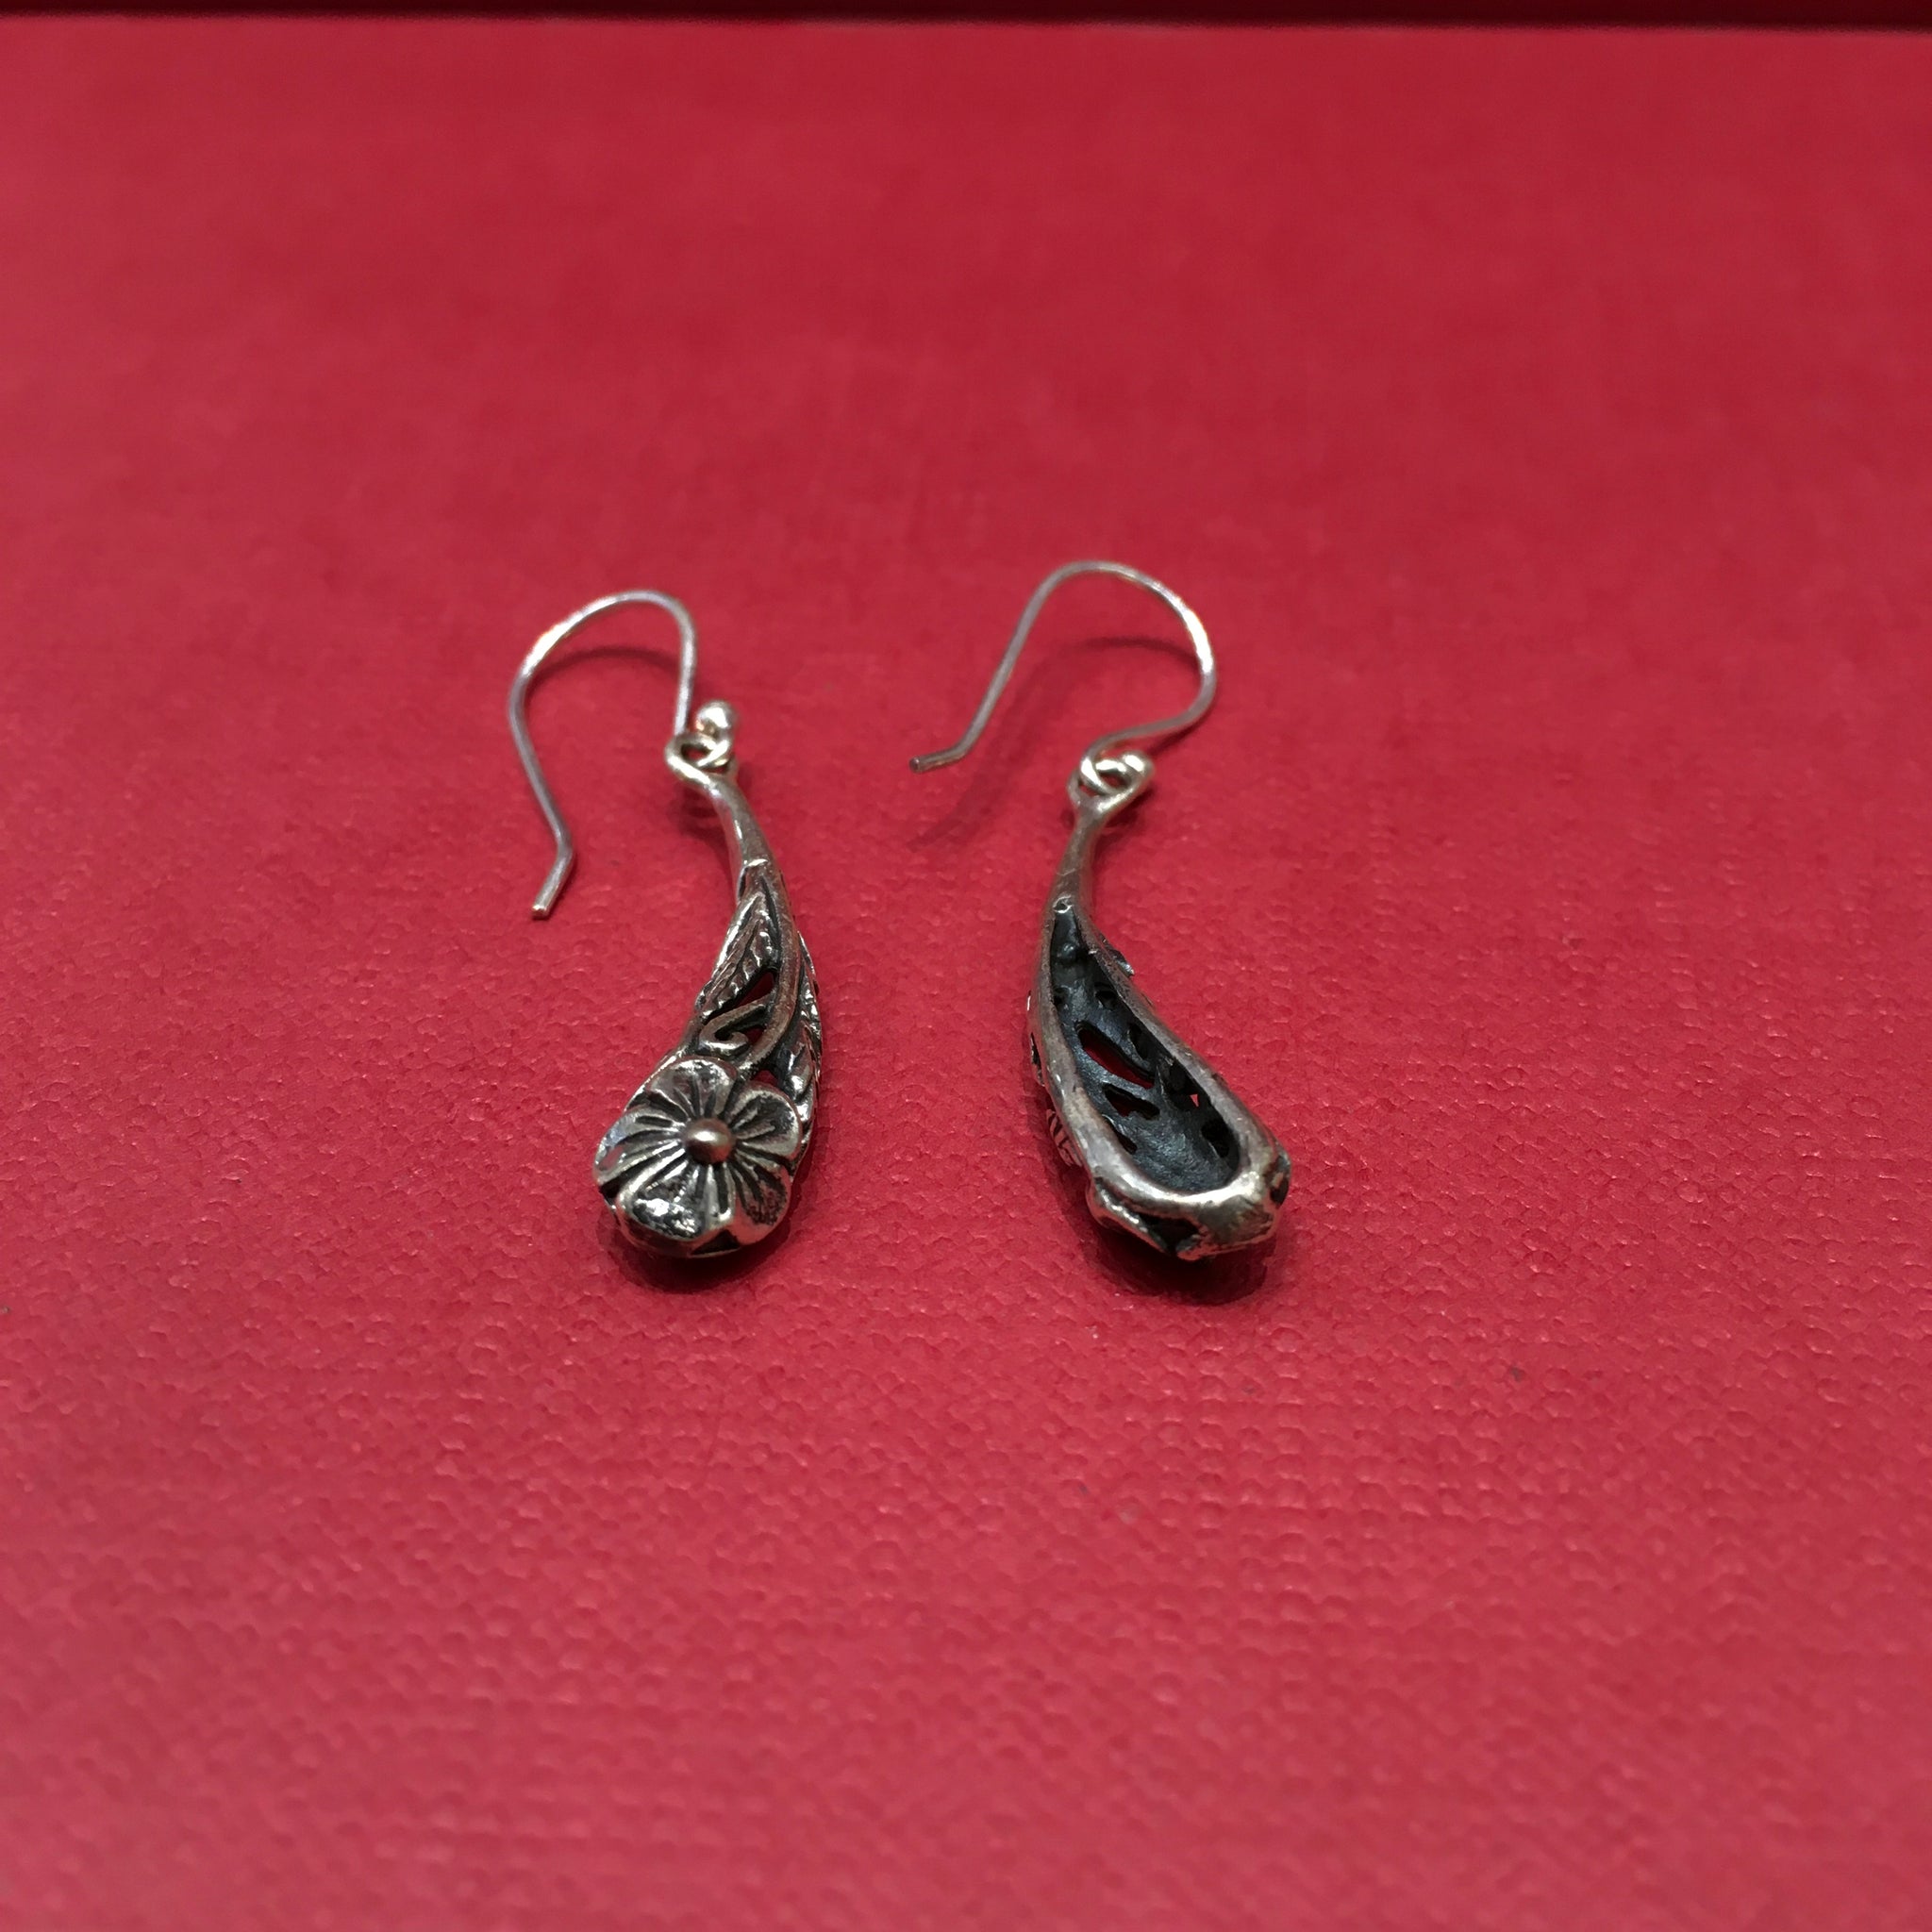 Light Earring Silver Earring 7865-20 - Dazzles Jewellery